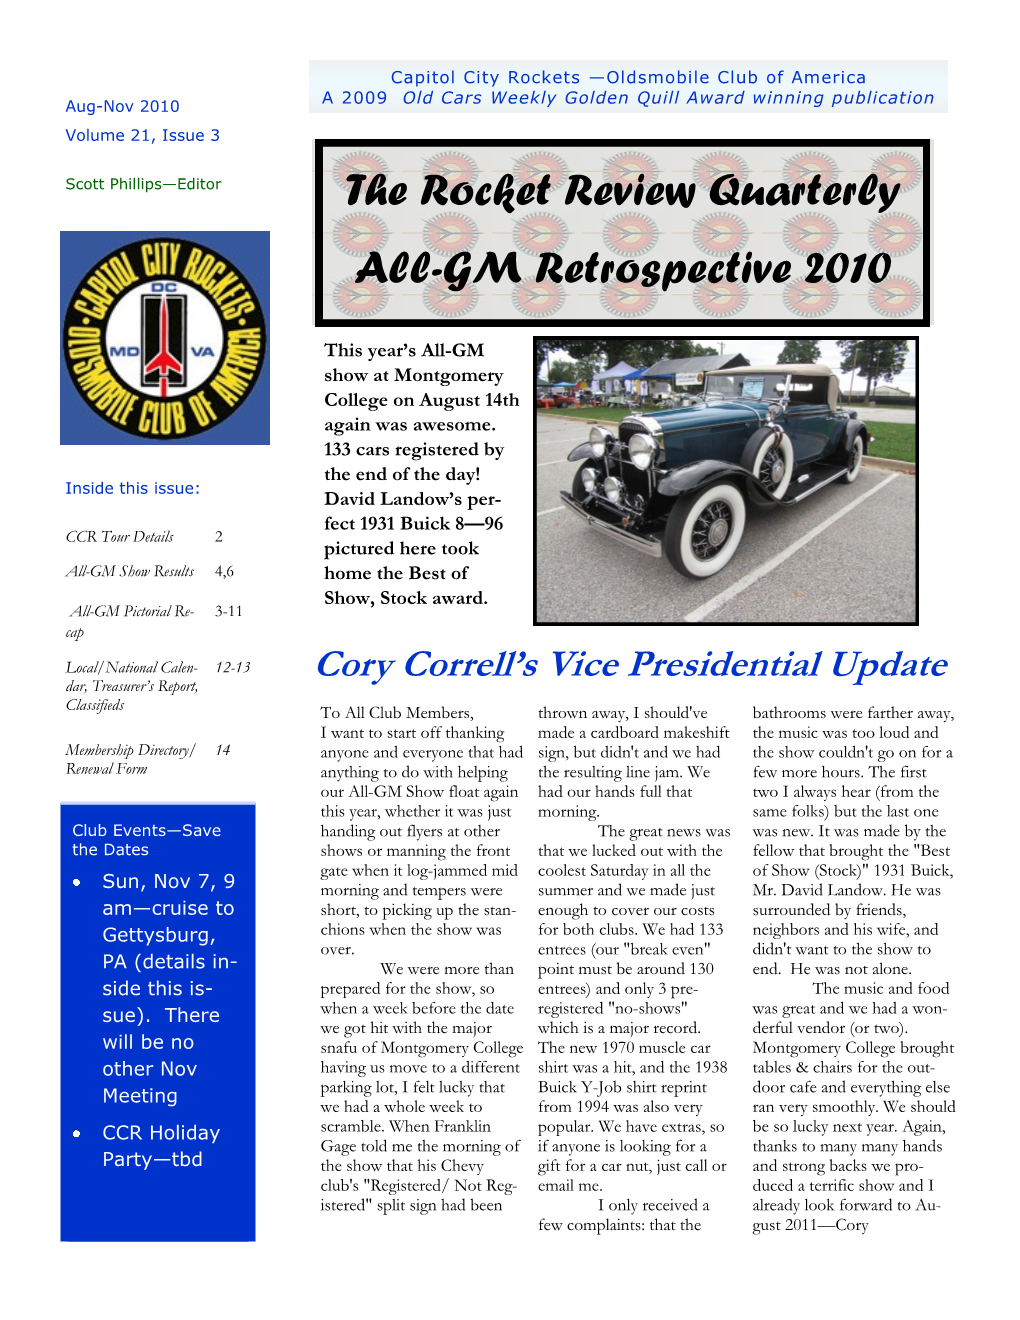 The Rocket Review Quarterly All-GM Retrospective 2010